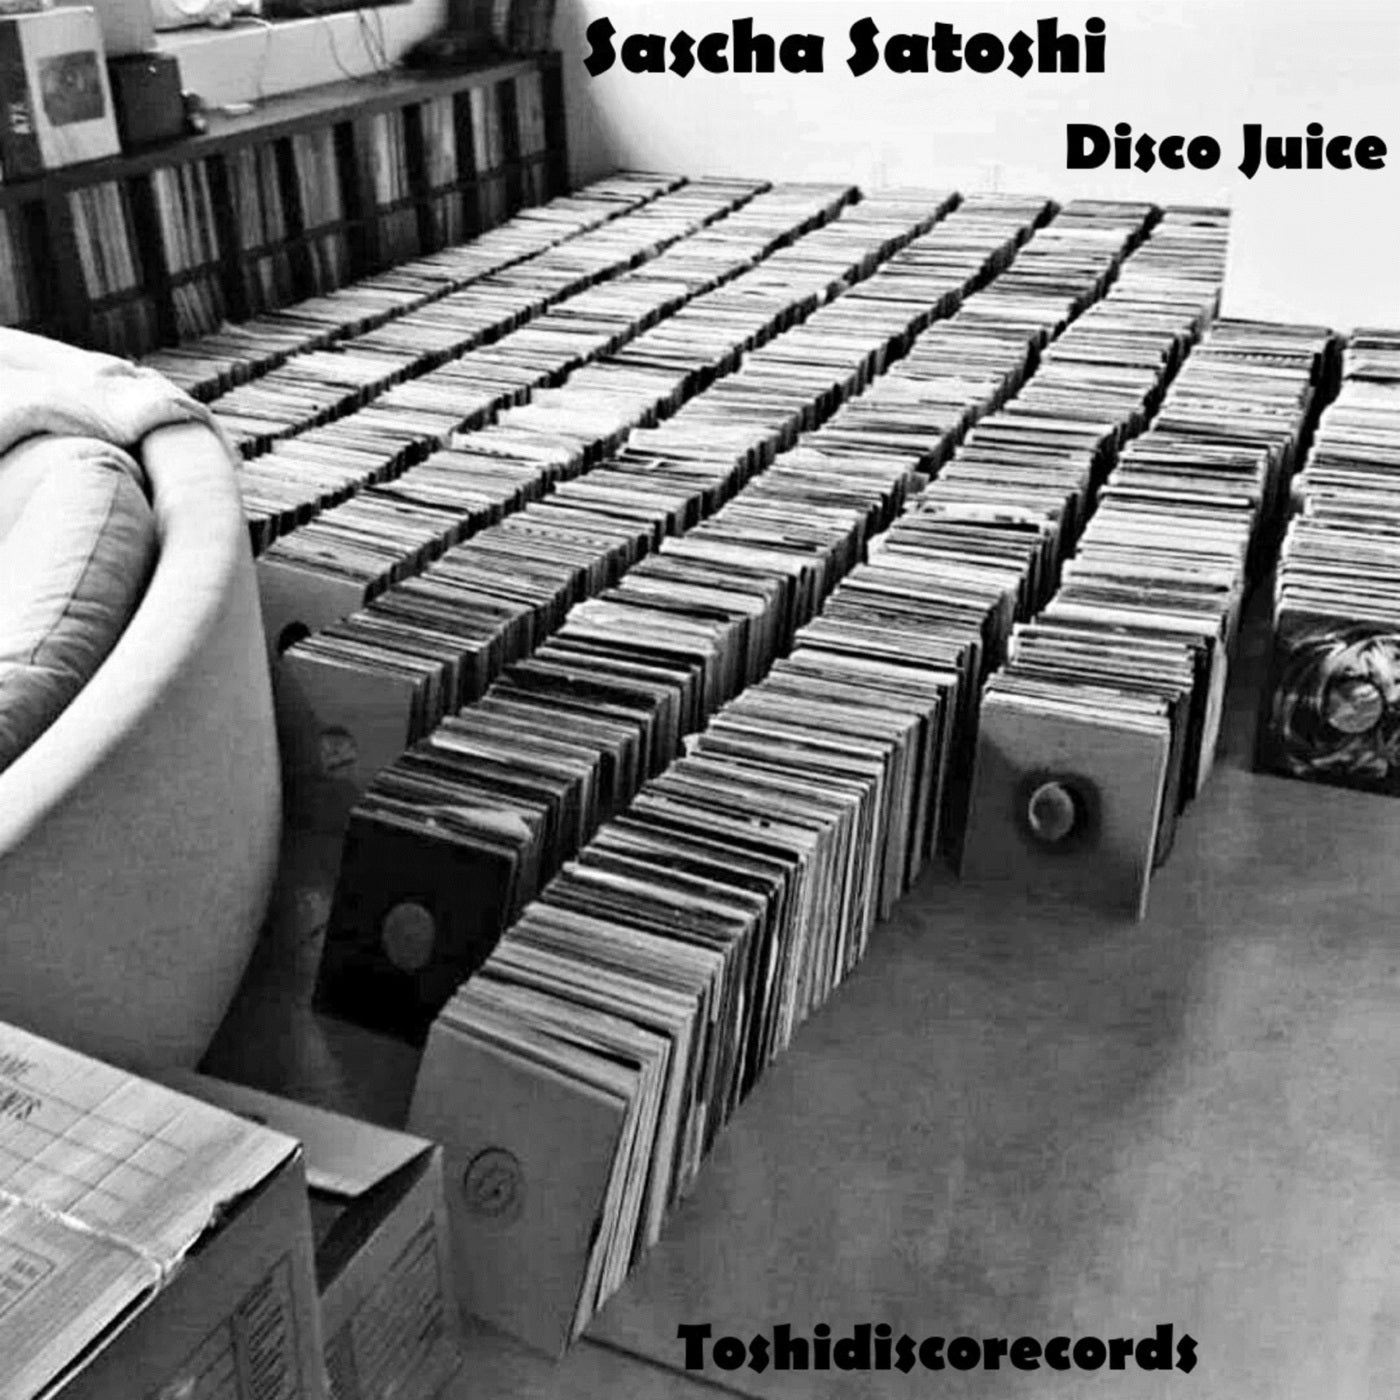 Sascha Satoshi - Disco Juice [TDRS0002]